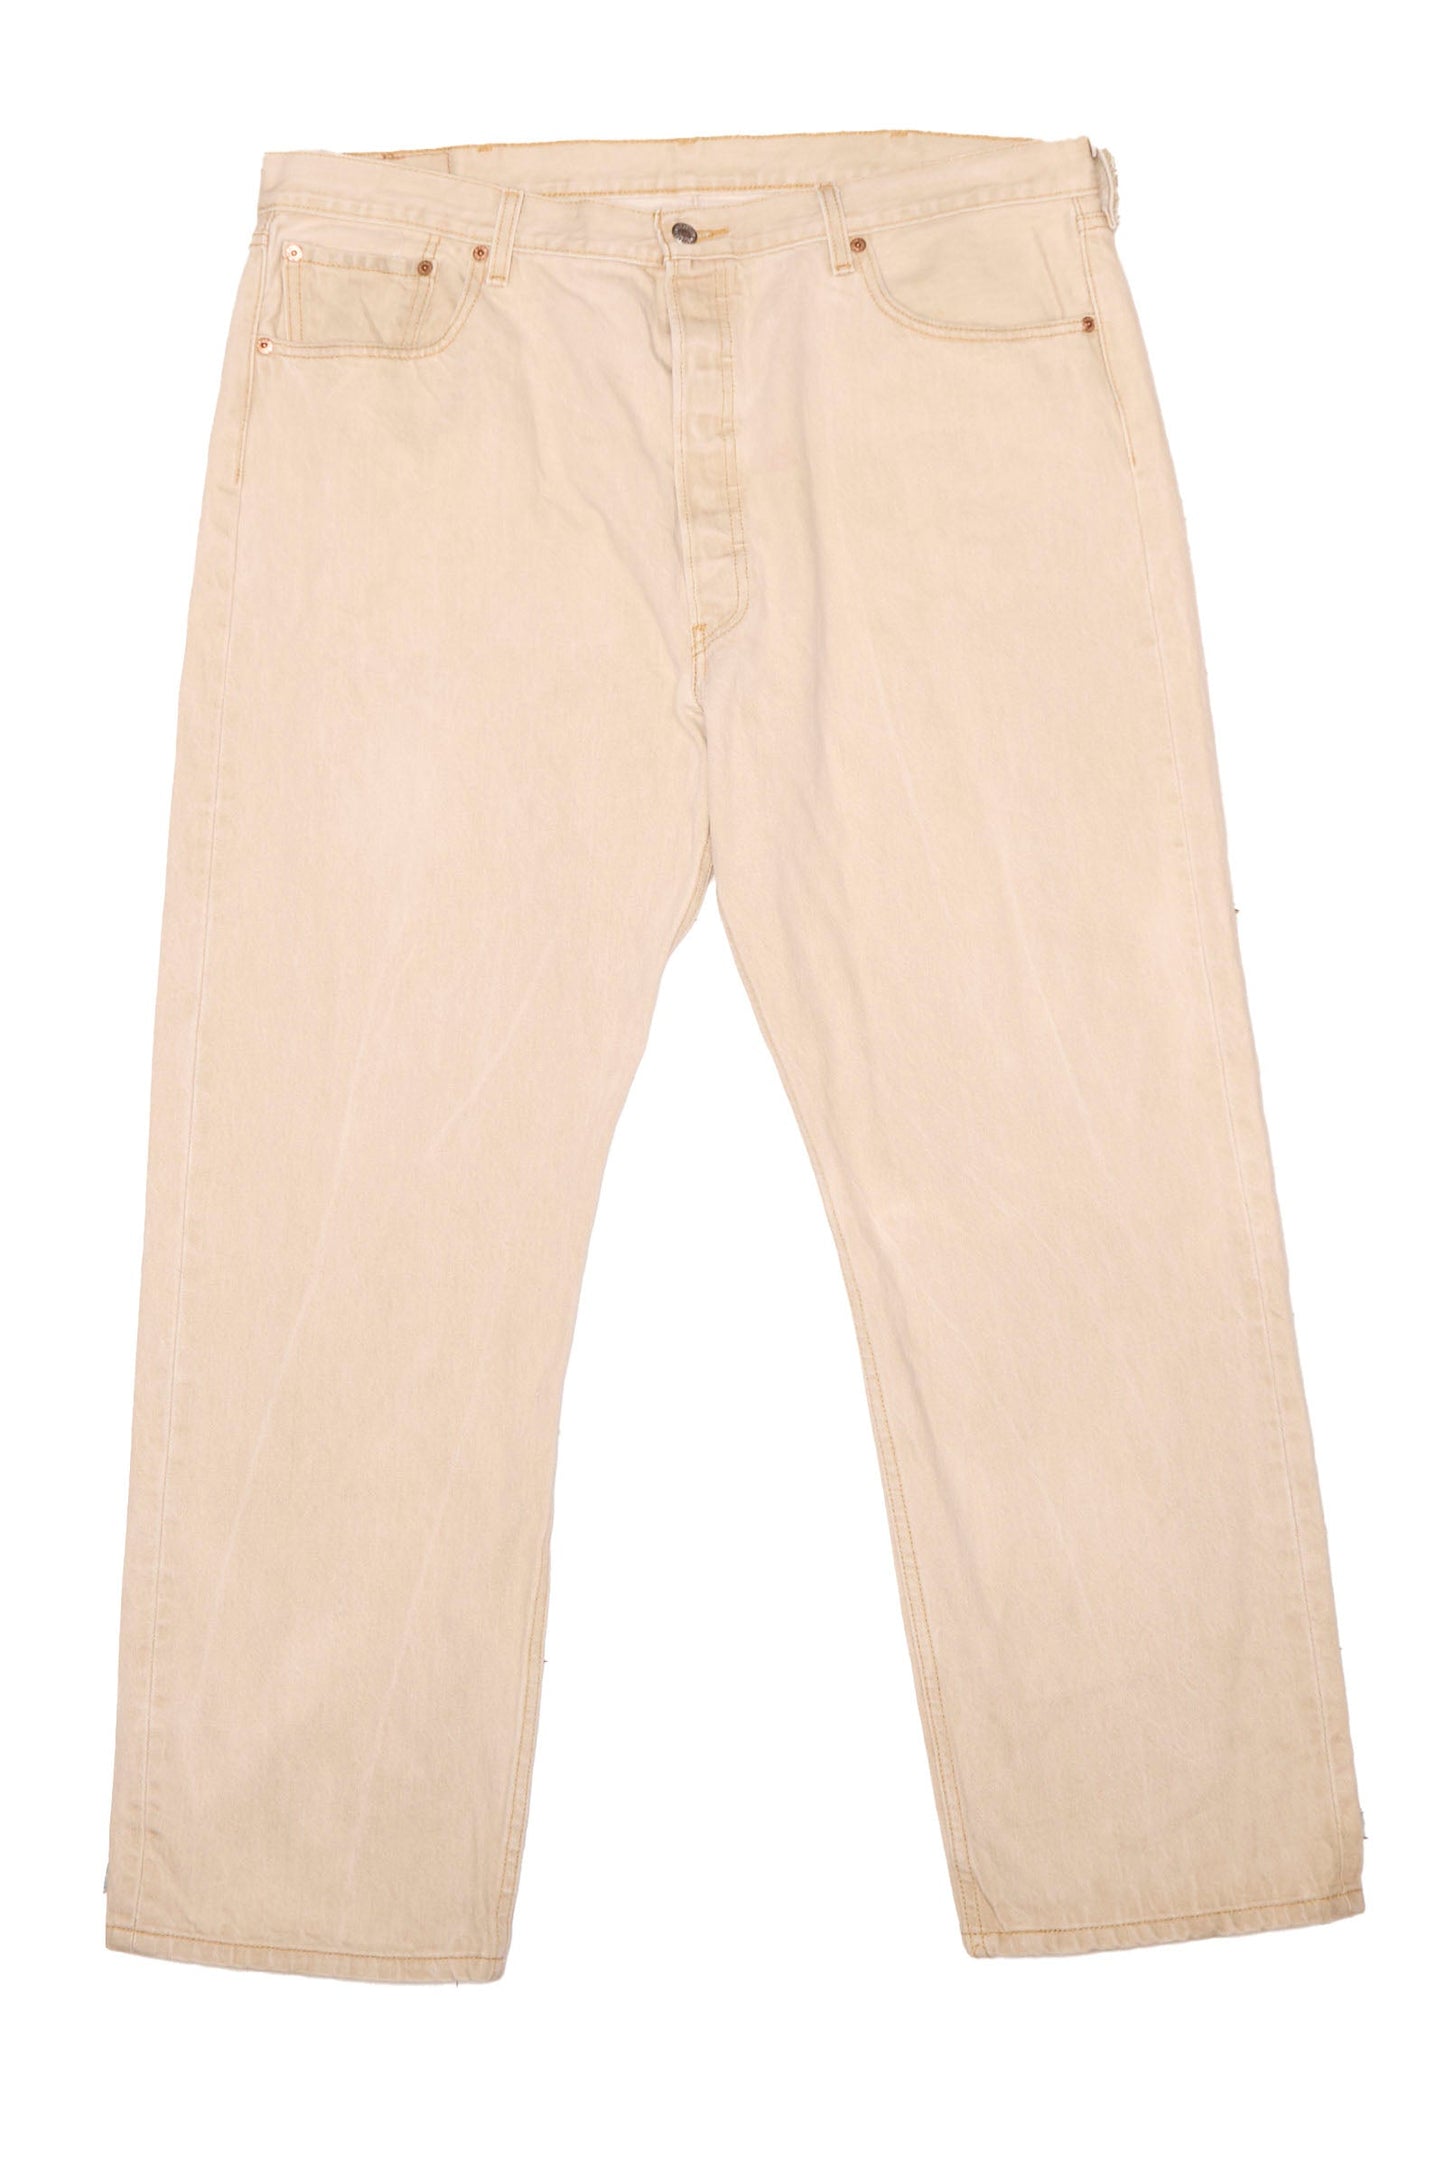 Button Up levis Straight cut Jeans - W42" L32"